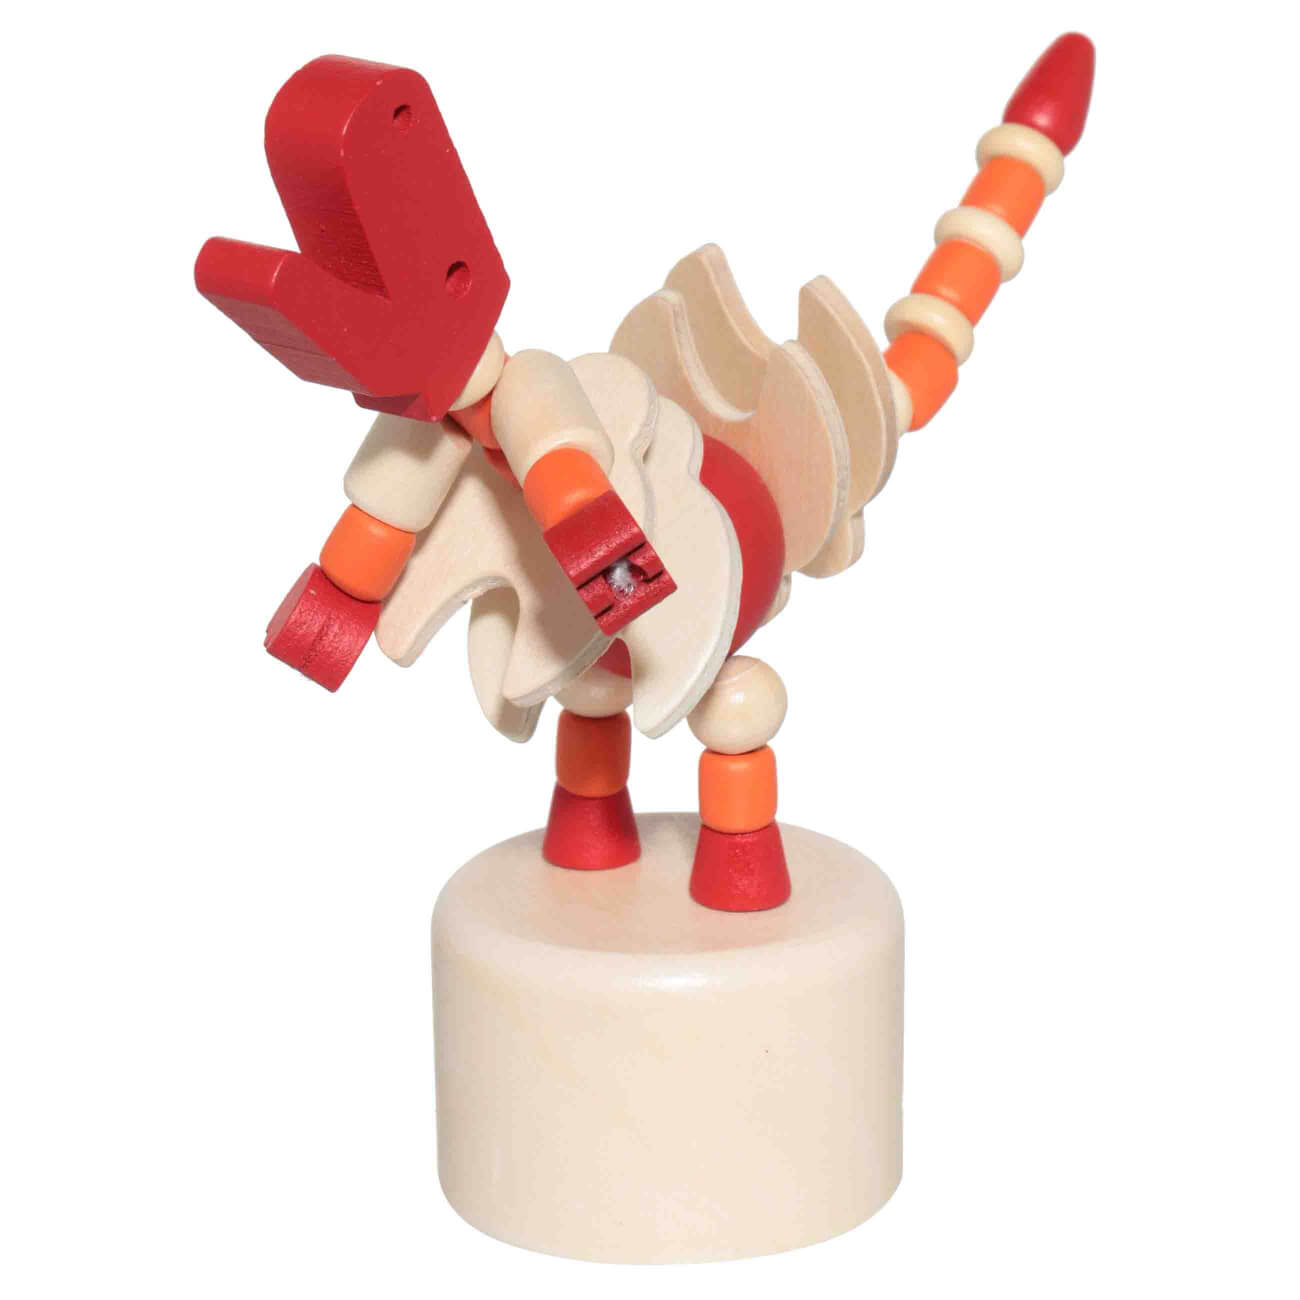 Игрушка детская, 14х5 см, дергунчик, дерево, красная, Динозавр, Dino сельскохозяйственные животные шесть шаблонов девятимерная головоломка мультфильм строительные блоки детская образовательная игрушка